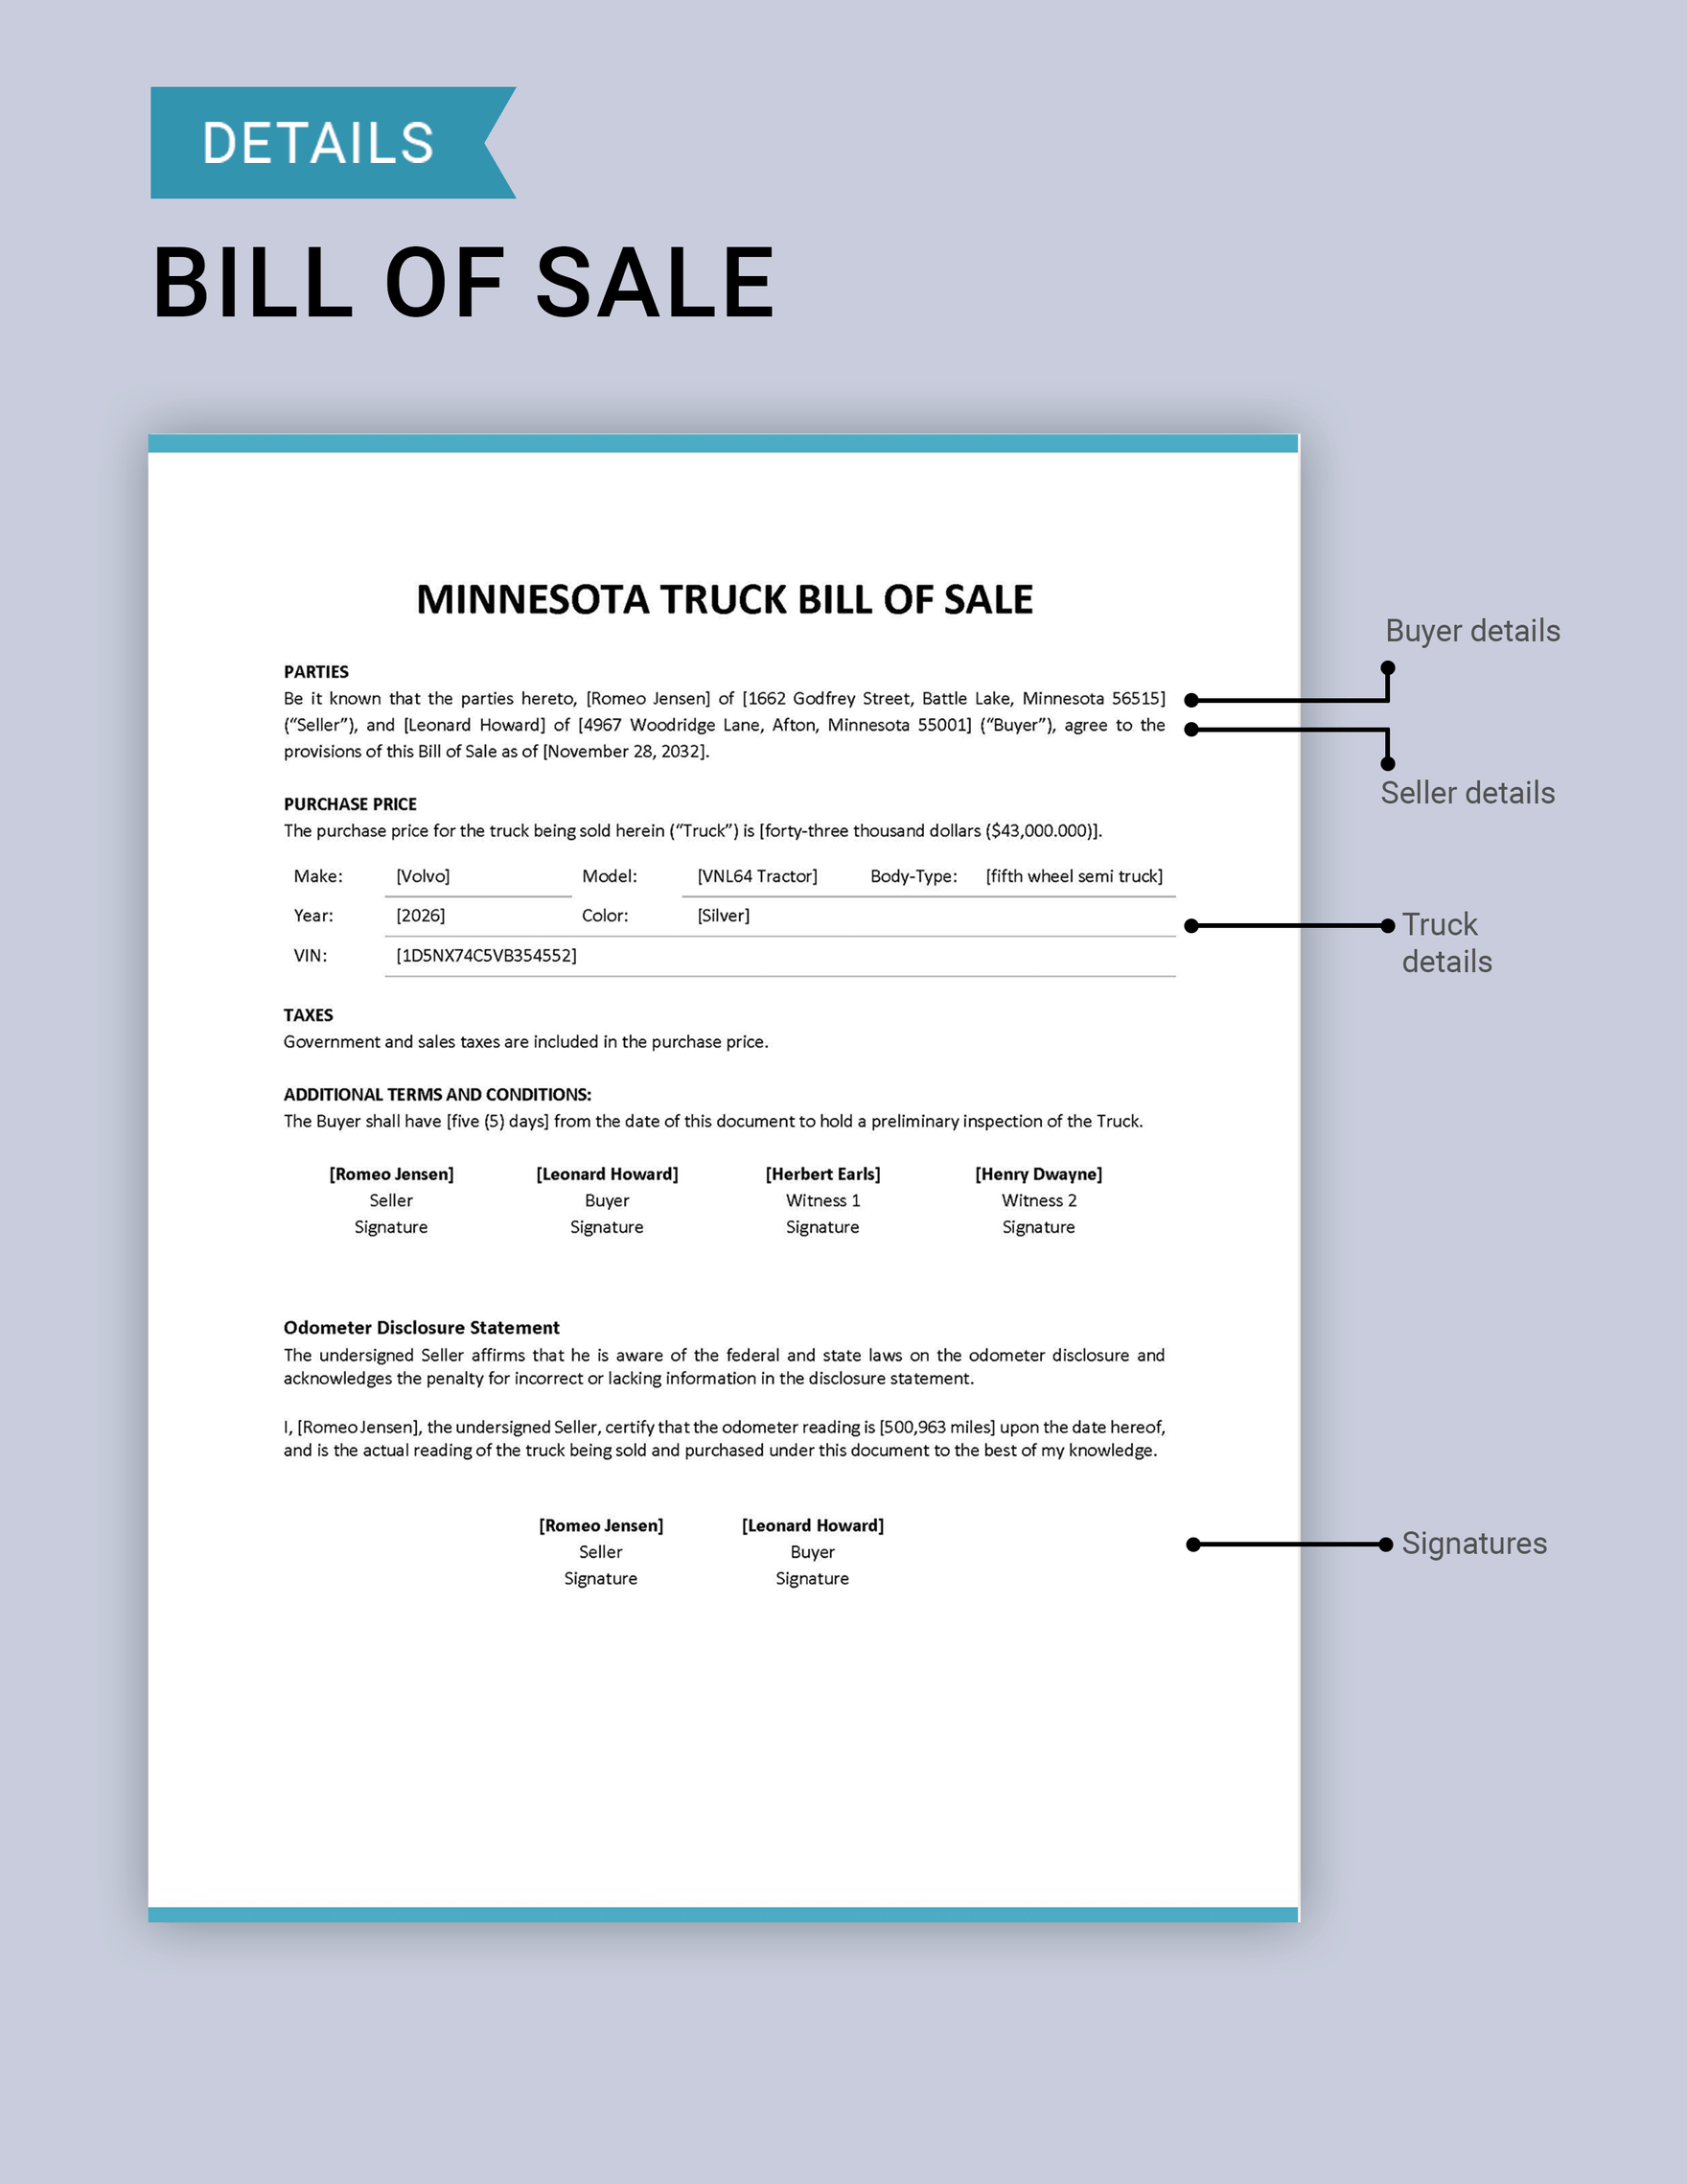 Minnesota Truck Bill of Sale Template